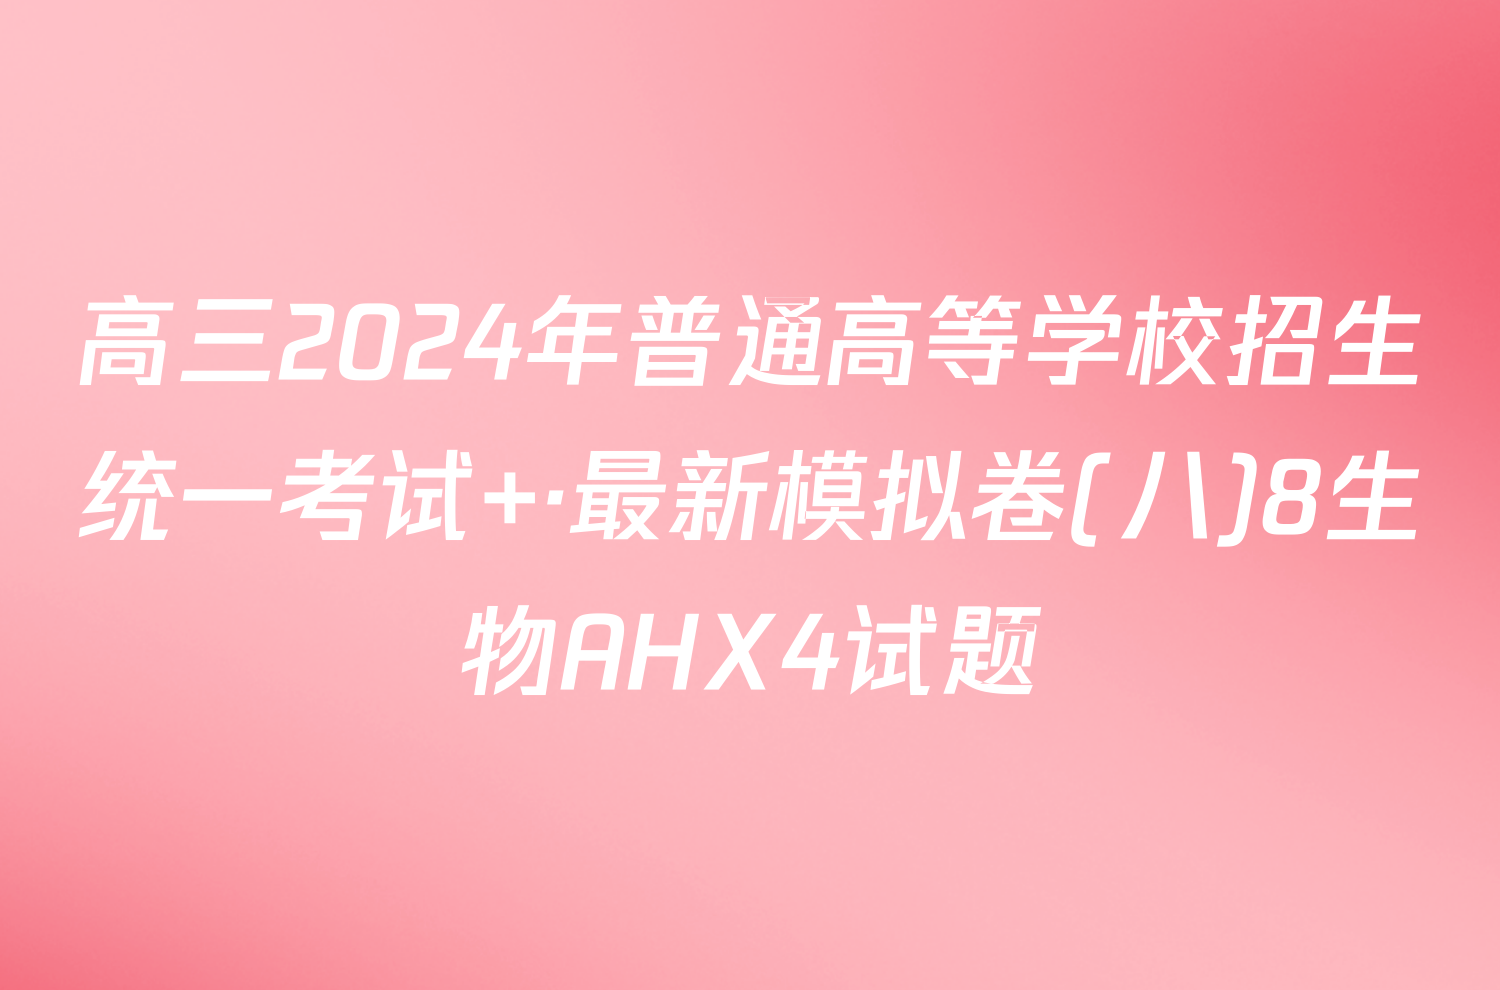 高三2024年普通高等学校招生统一考试 ·最新模拟卷(八)8生物AHX4试题